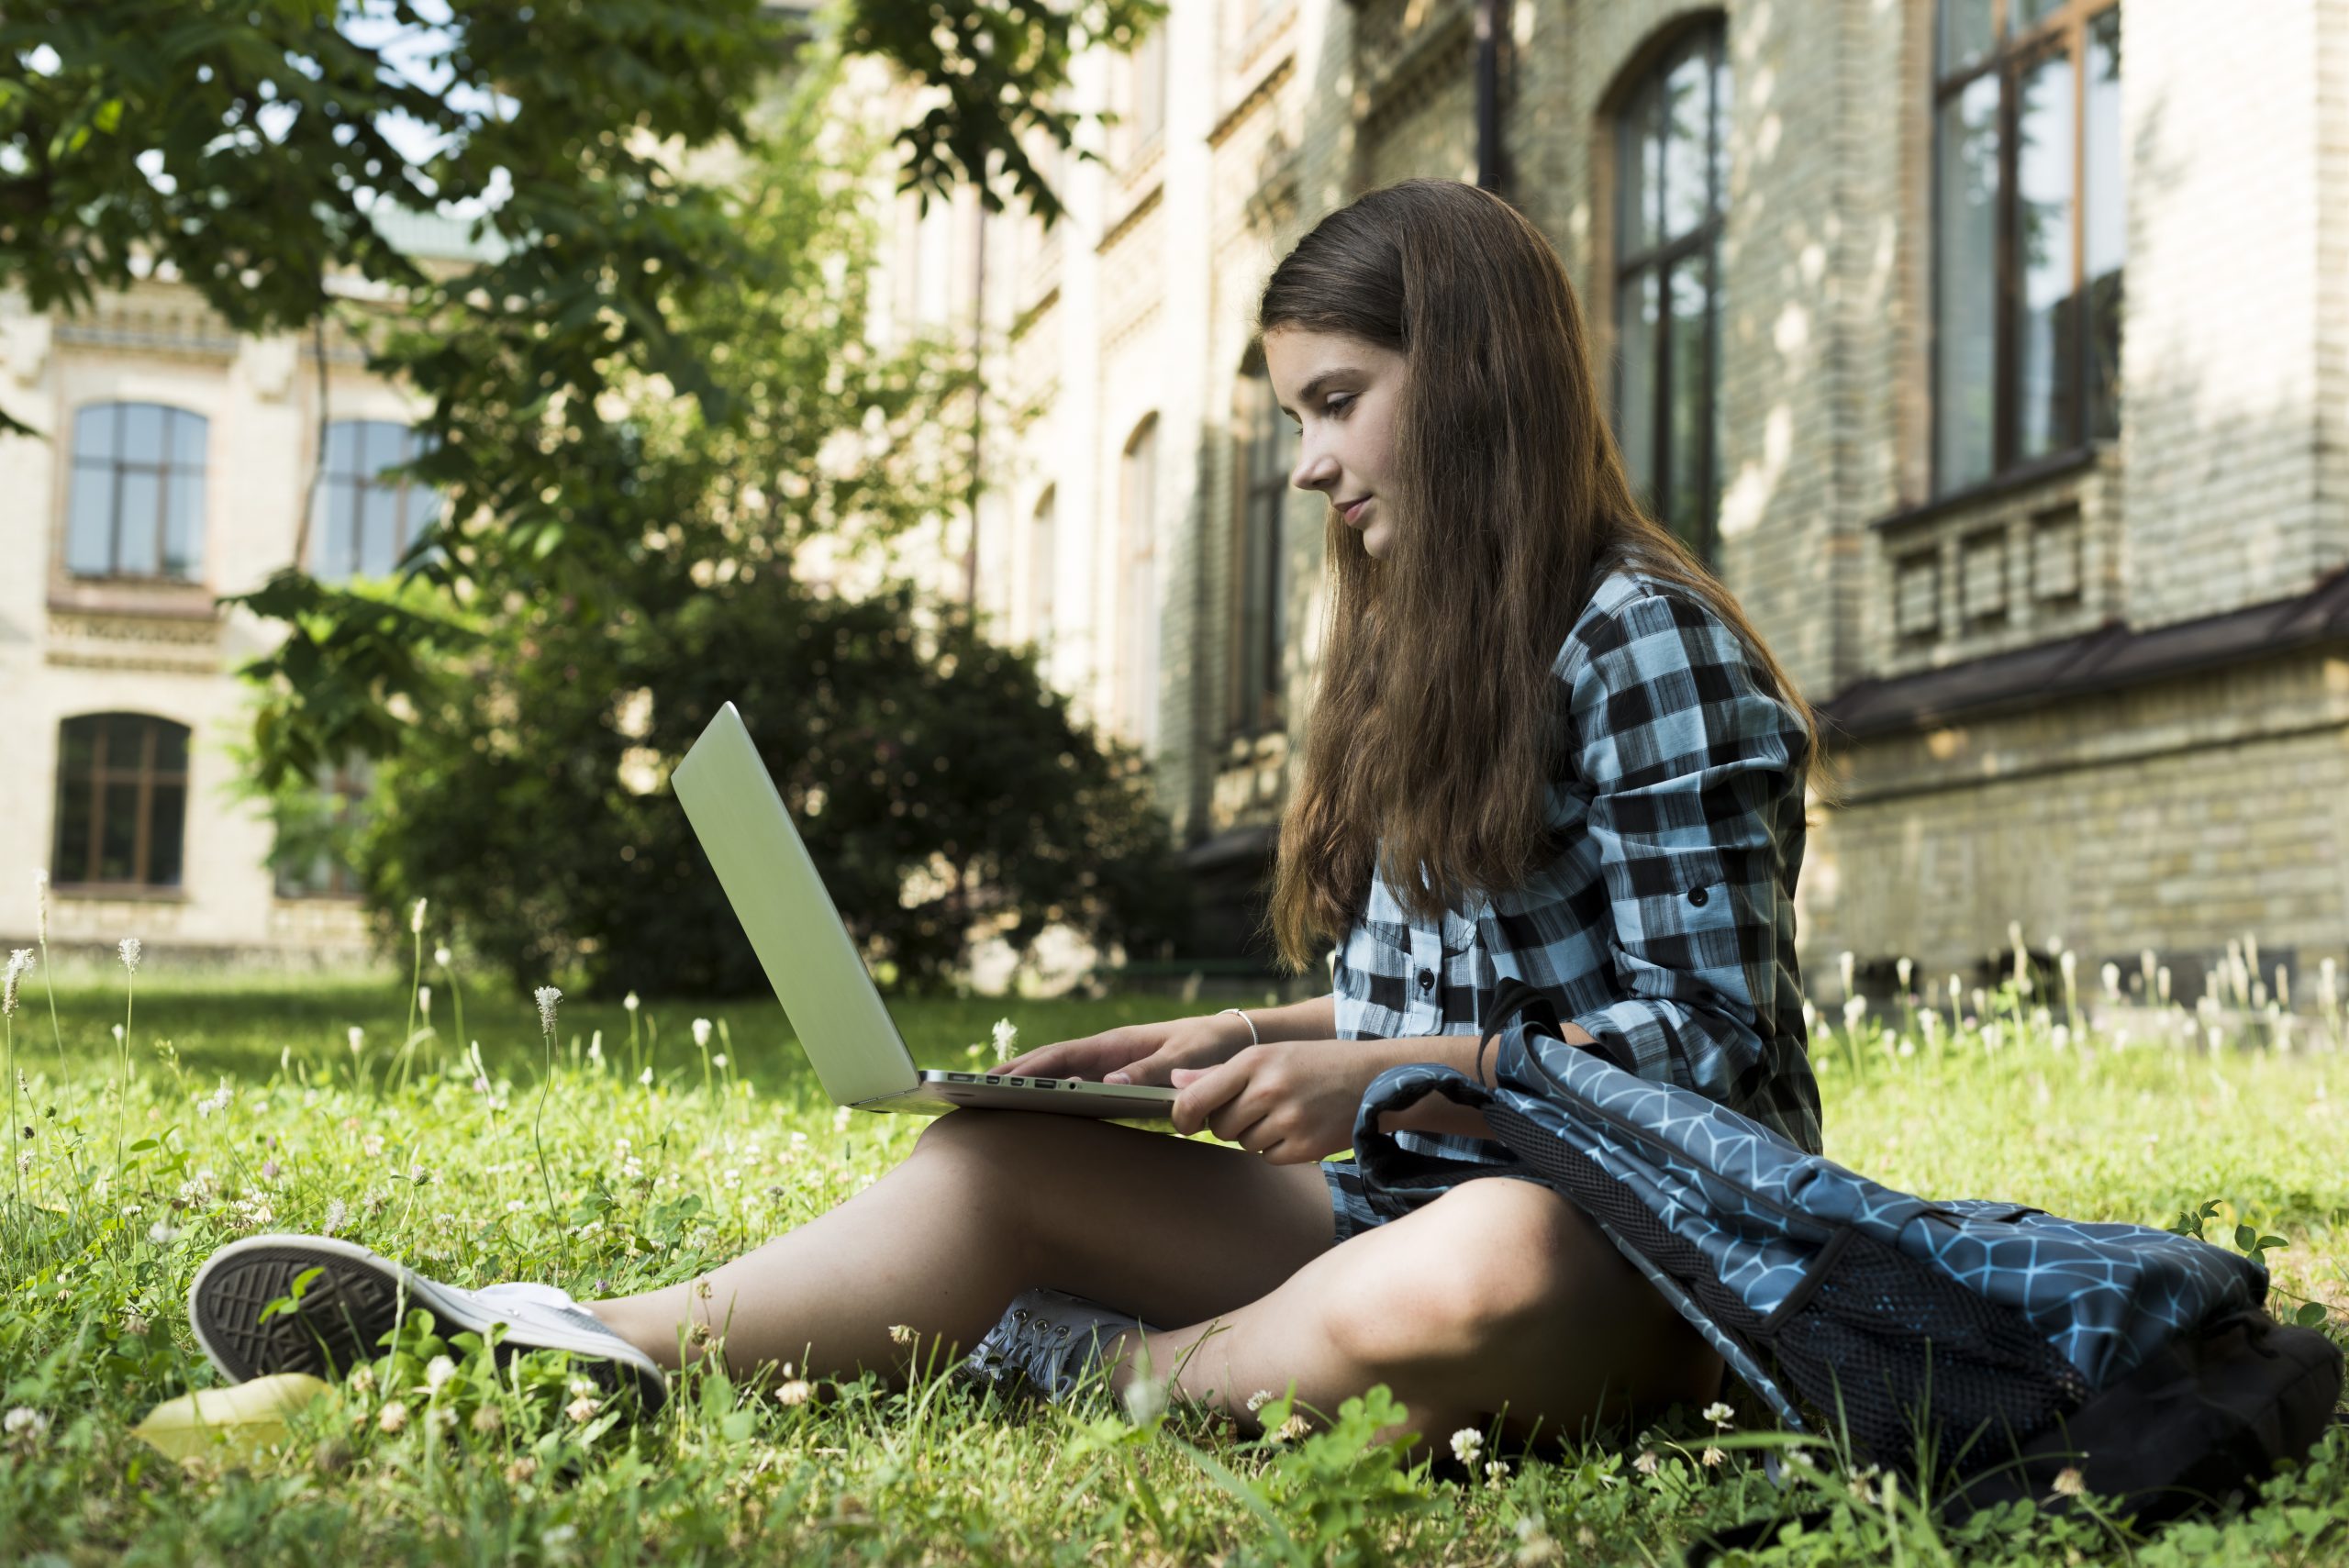 jovem estuda sentada na grama com notebook no colo